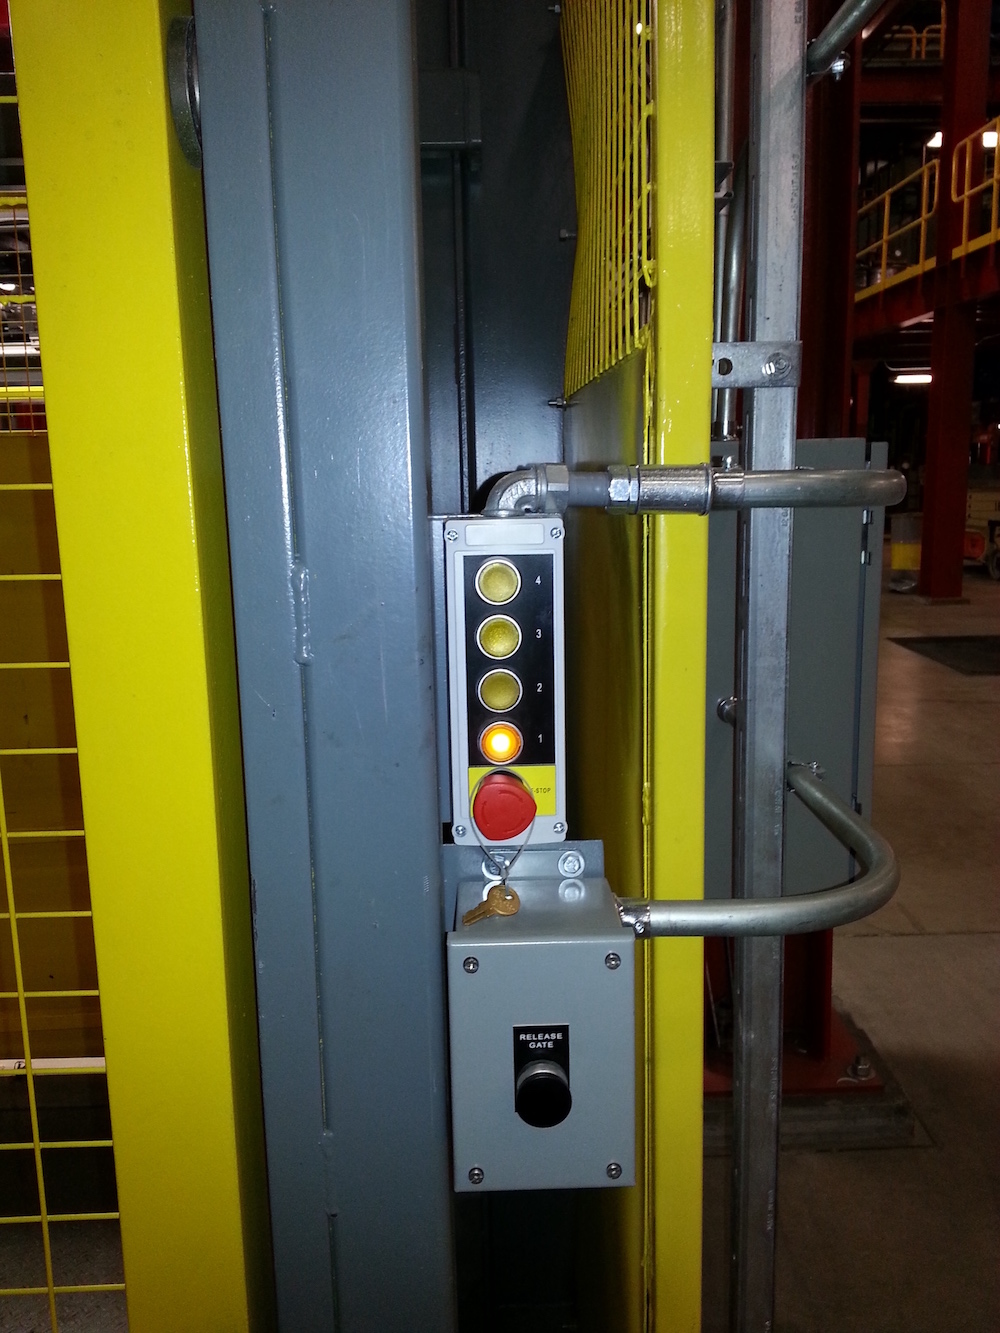 top level interlocked door operator station L1